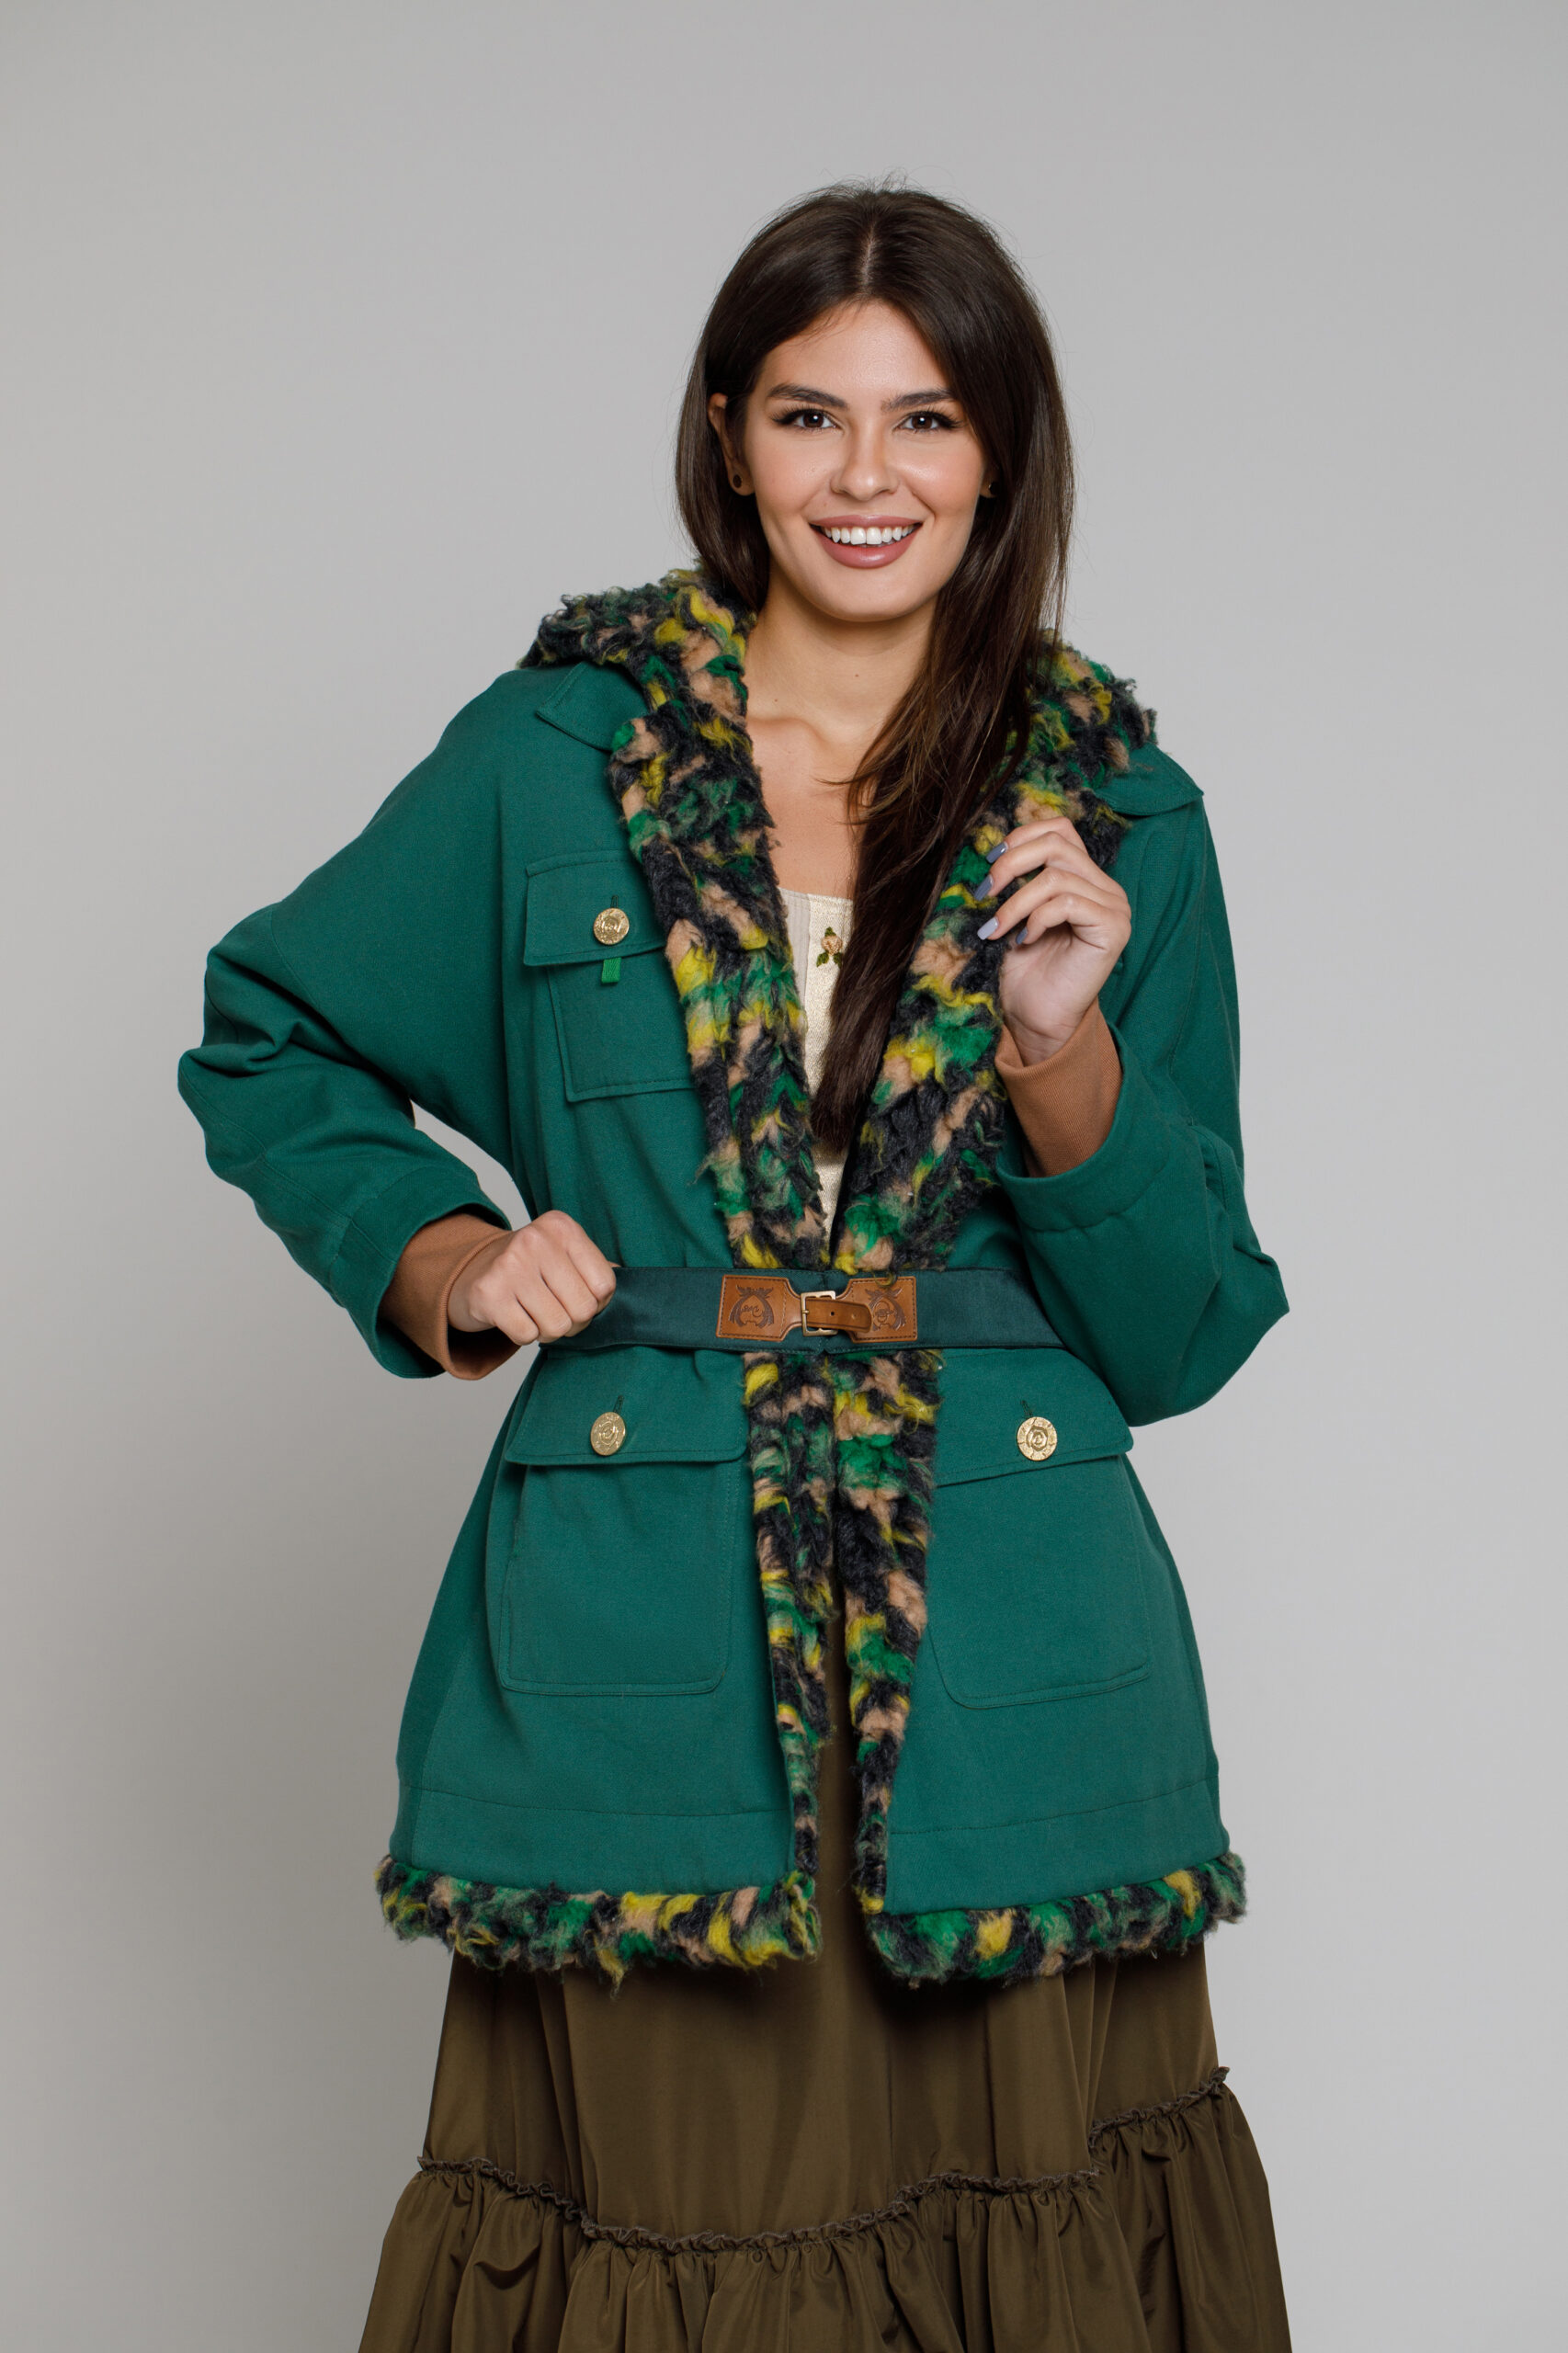 Jacheta HEDONA din doc verde cu blanita multicoloră. Materiale naturale, design unicat, cu broderie si aplicatii handmade